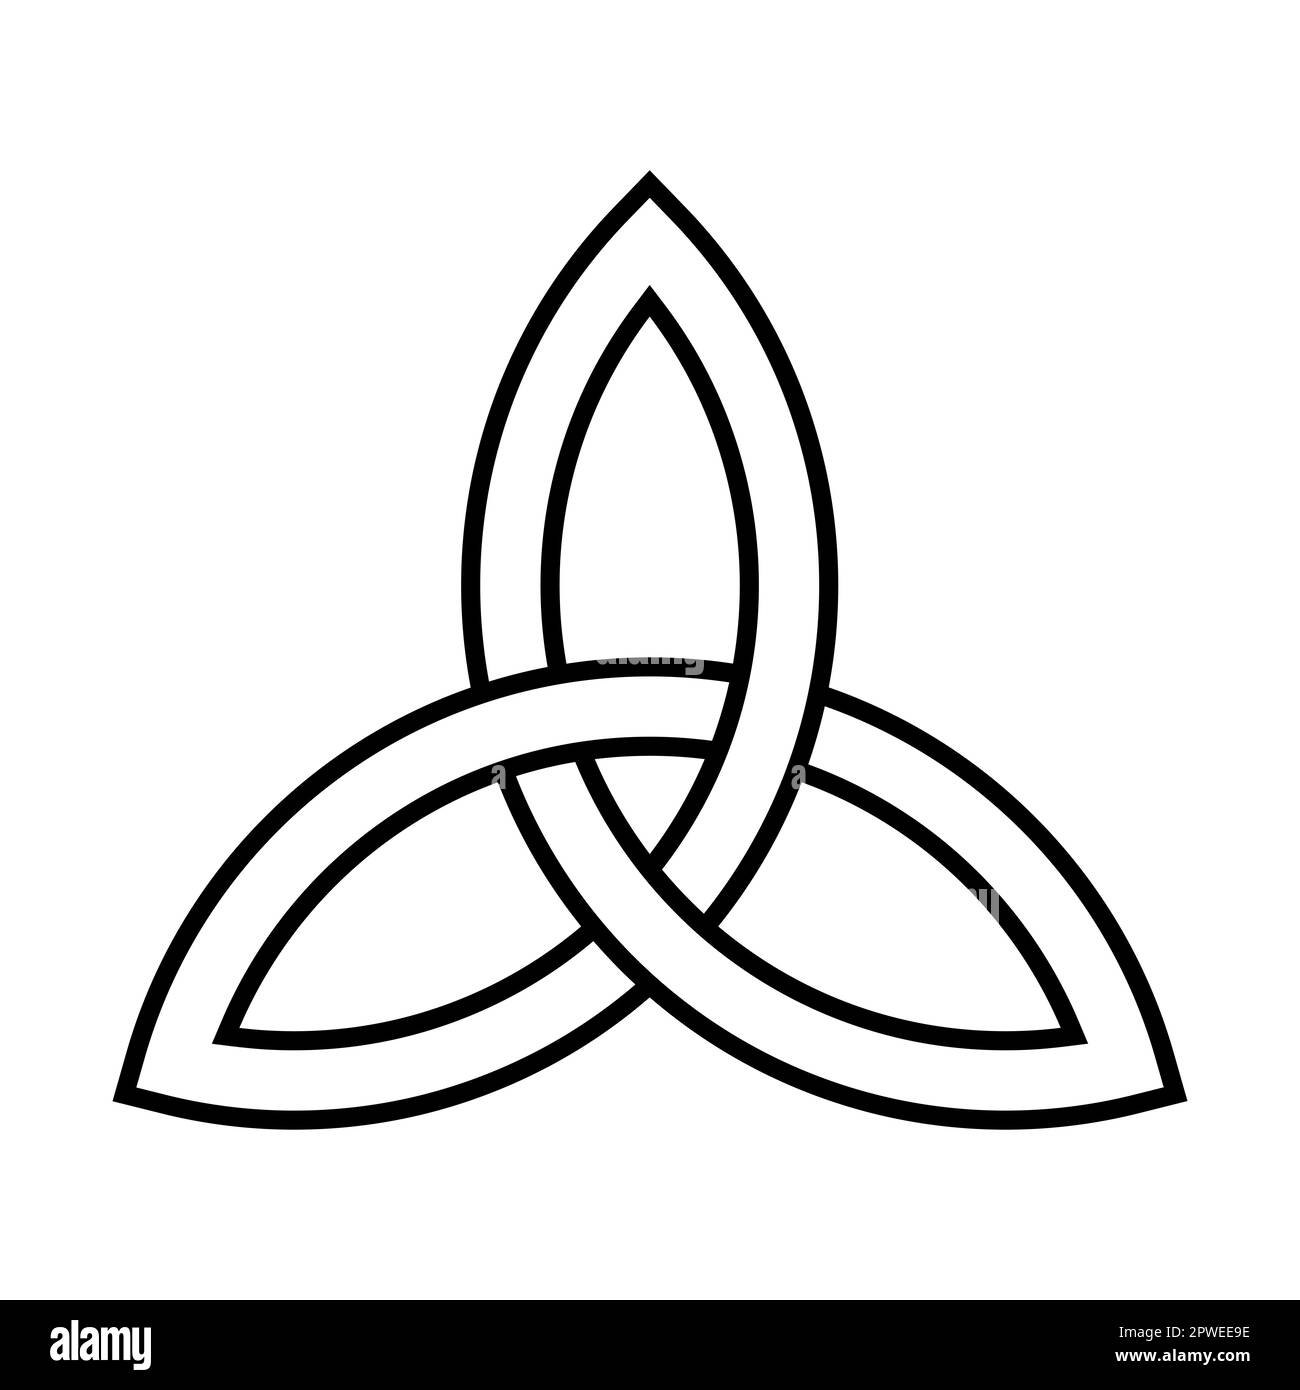 Triquetra, ein Emblem der Dreifaltigkeit, das durch das Zusammenfügen von drei gleichen Bögen oder Teilen von Kreisen gebildet wird. Keltischer Dreiecksknoten. Stockfoto